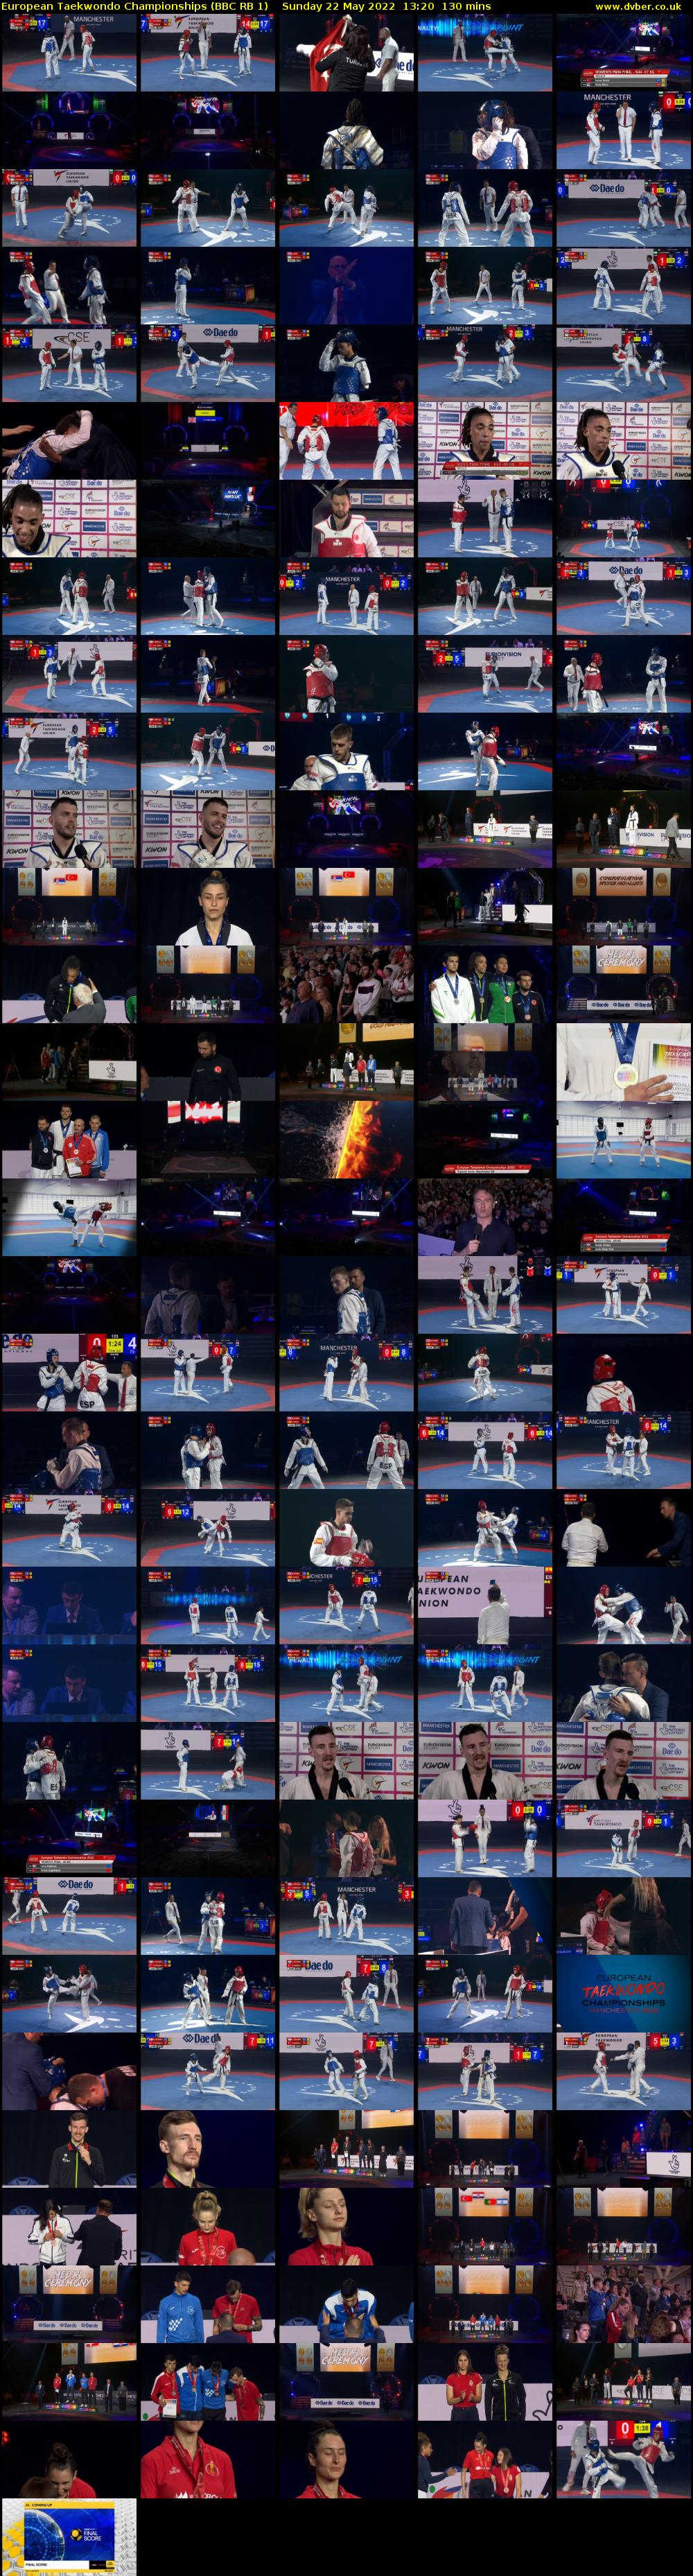 European Taekwondo Championships (BBC RB 1) Sunday 22 May 2022 13:20 - 15:30